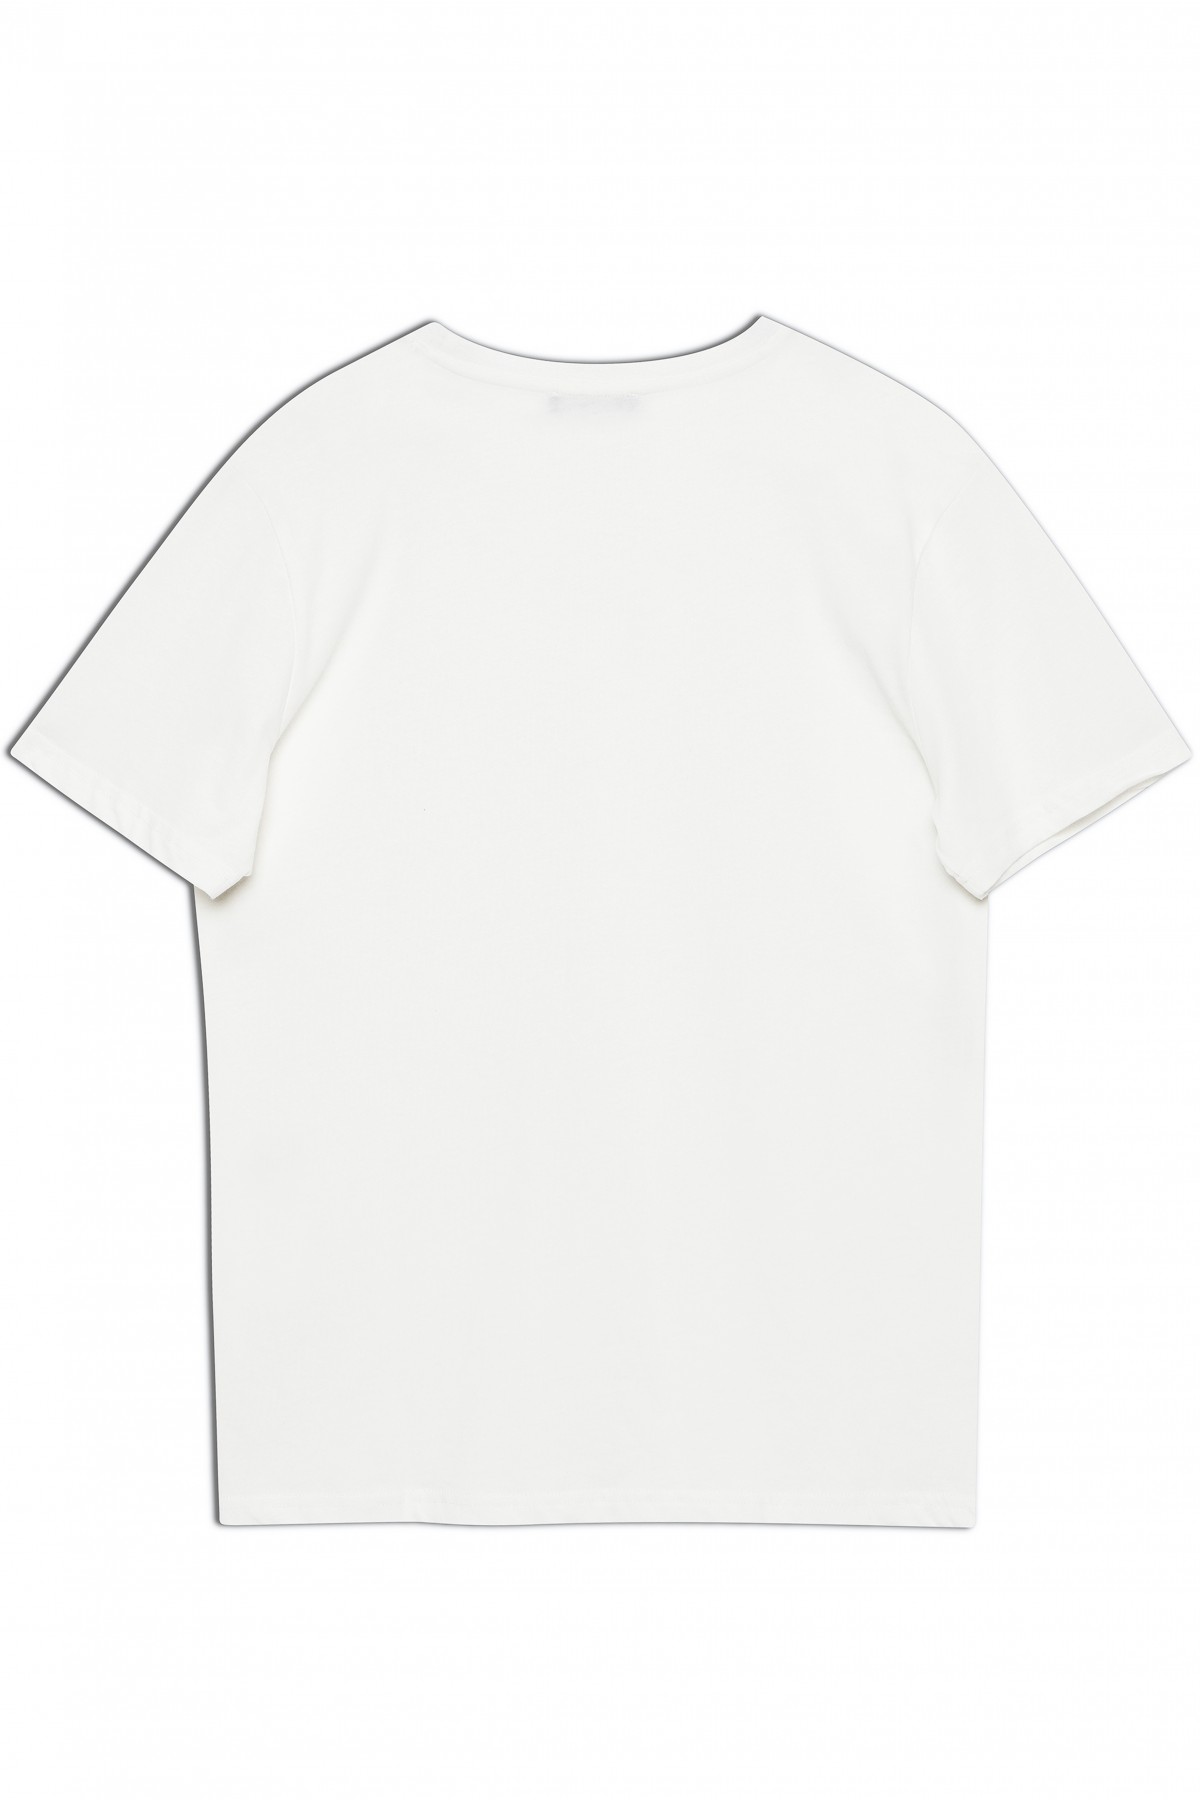 Dembu Logolu Pamuk Bisiklet Yaka Beyaz T-shirt 23'